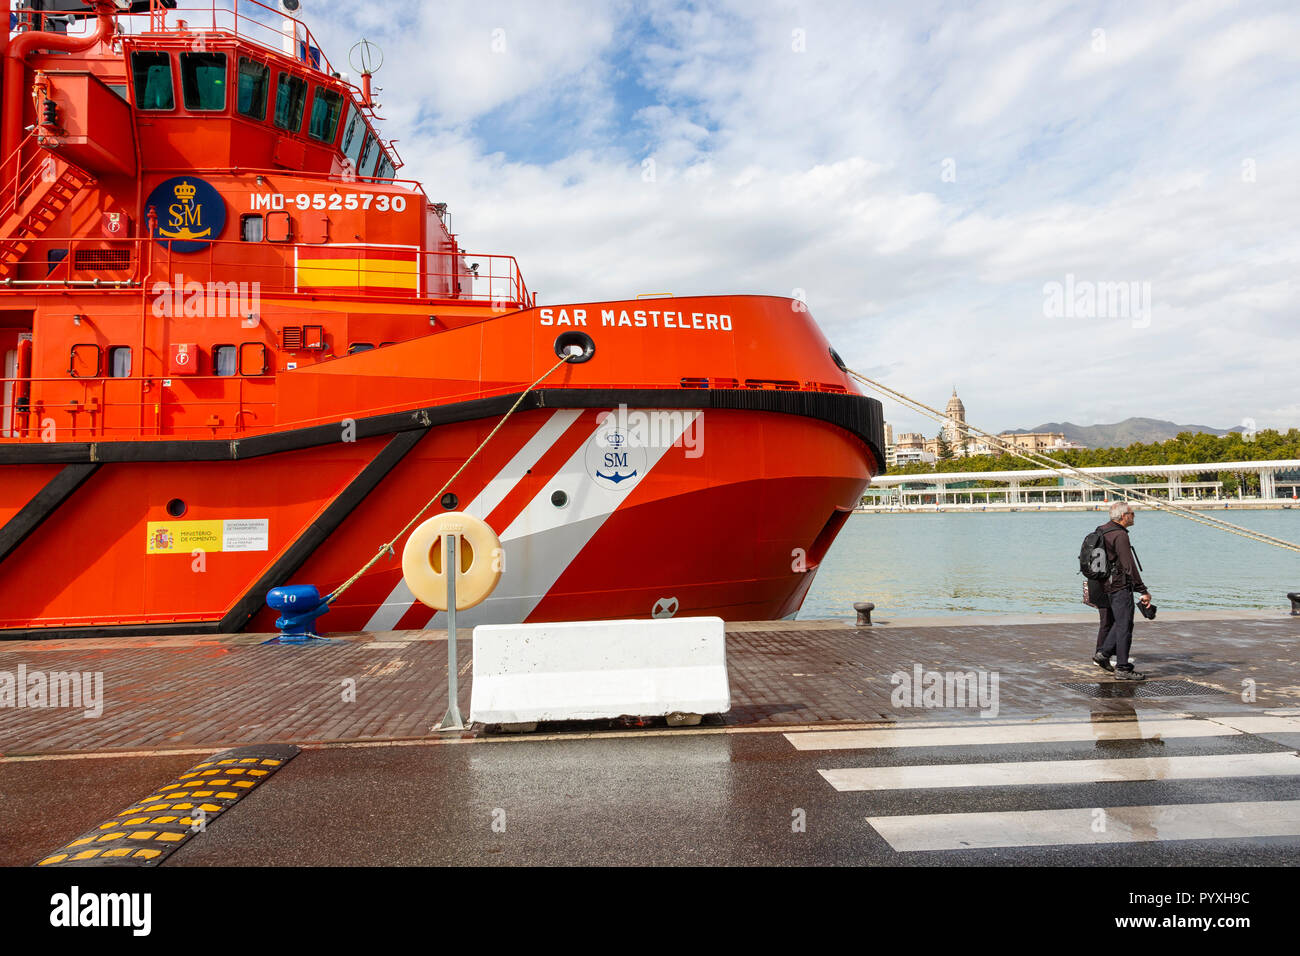 Spanisch Rettungsfahrzeug SAR Mastelero, an der Muelle Uno, Malaga, Spanien Stockfoto